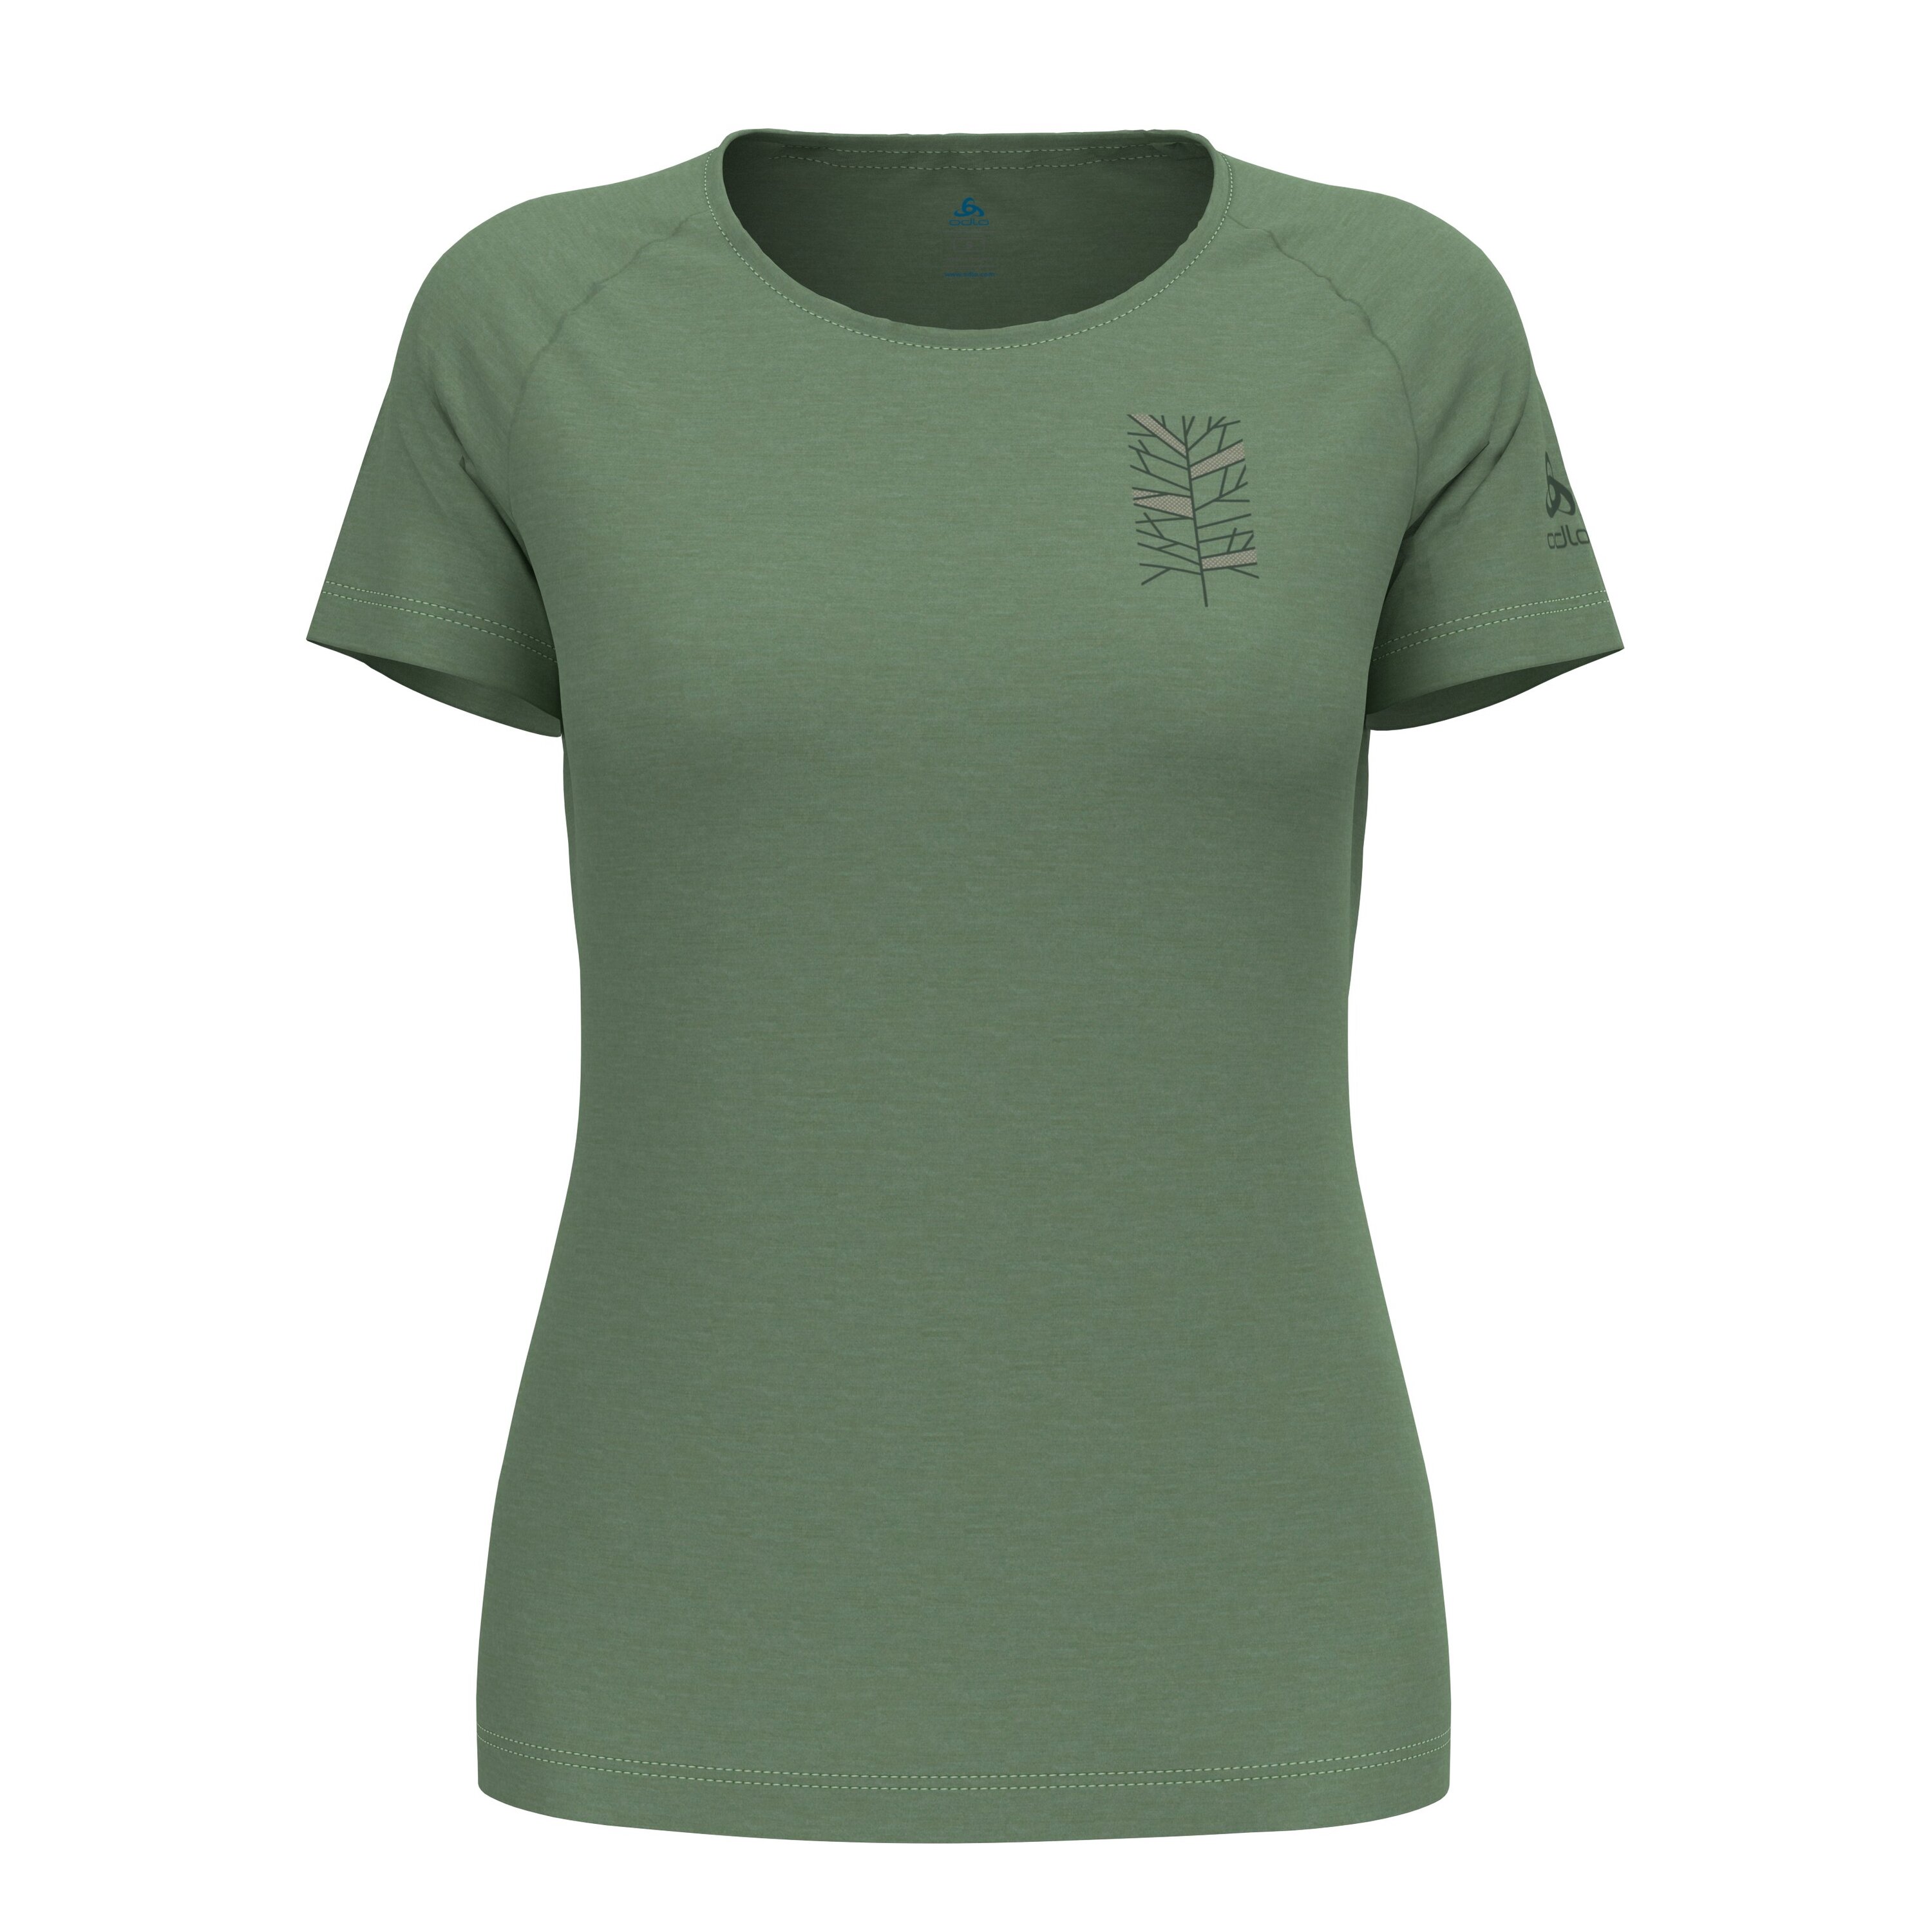 ODLO Ascent Performance Wool 130 T-Shirt mit Astprint für Damen, L, grau